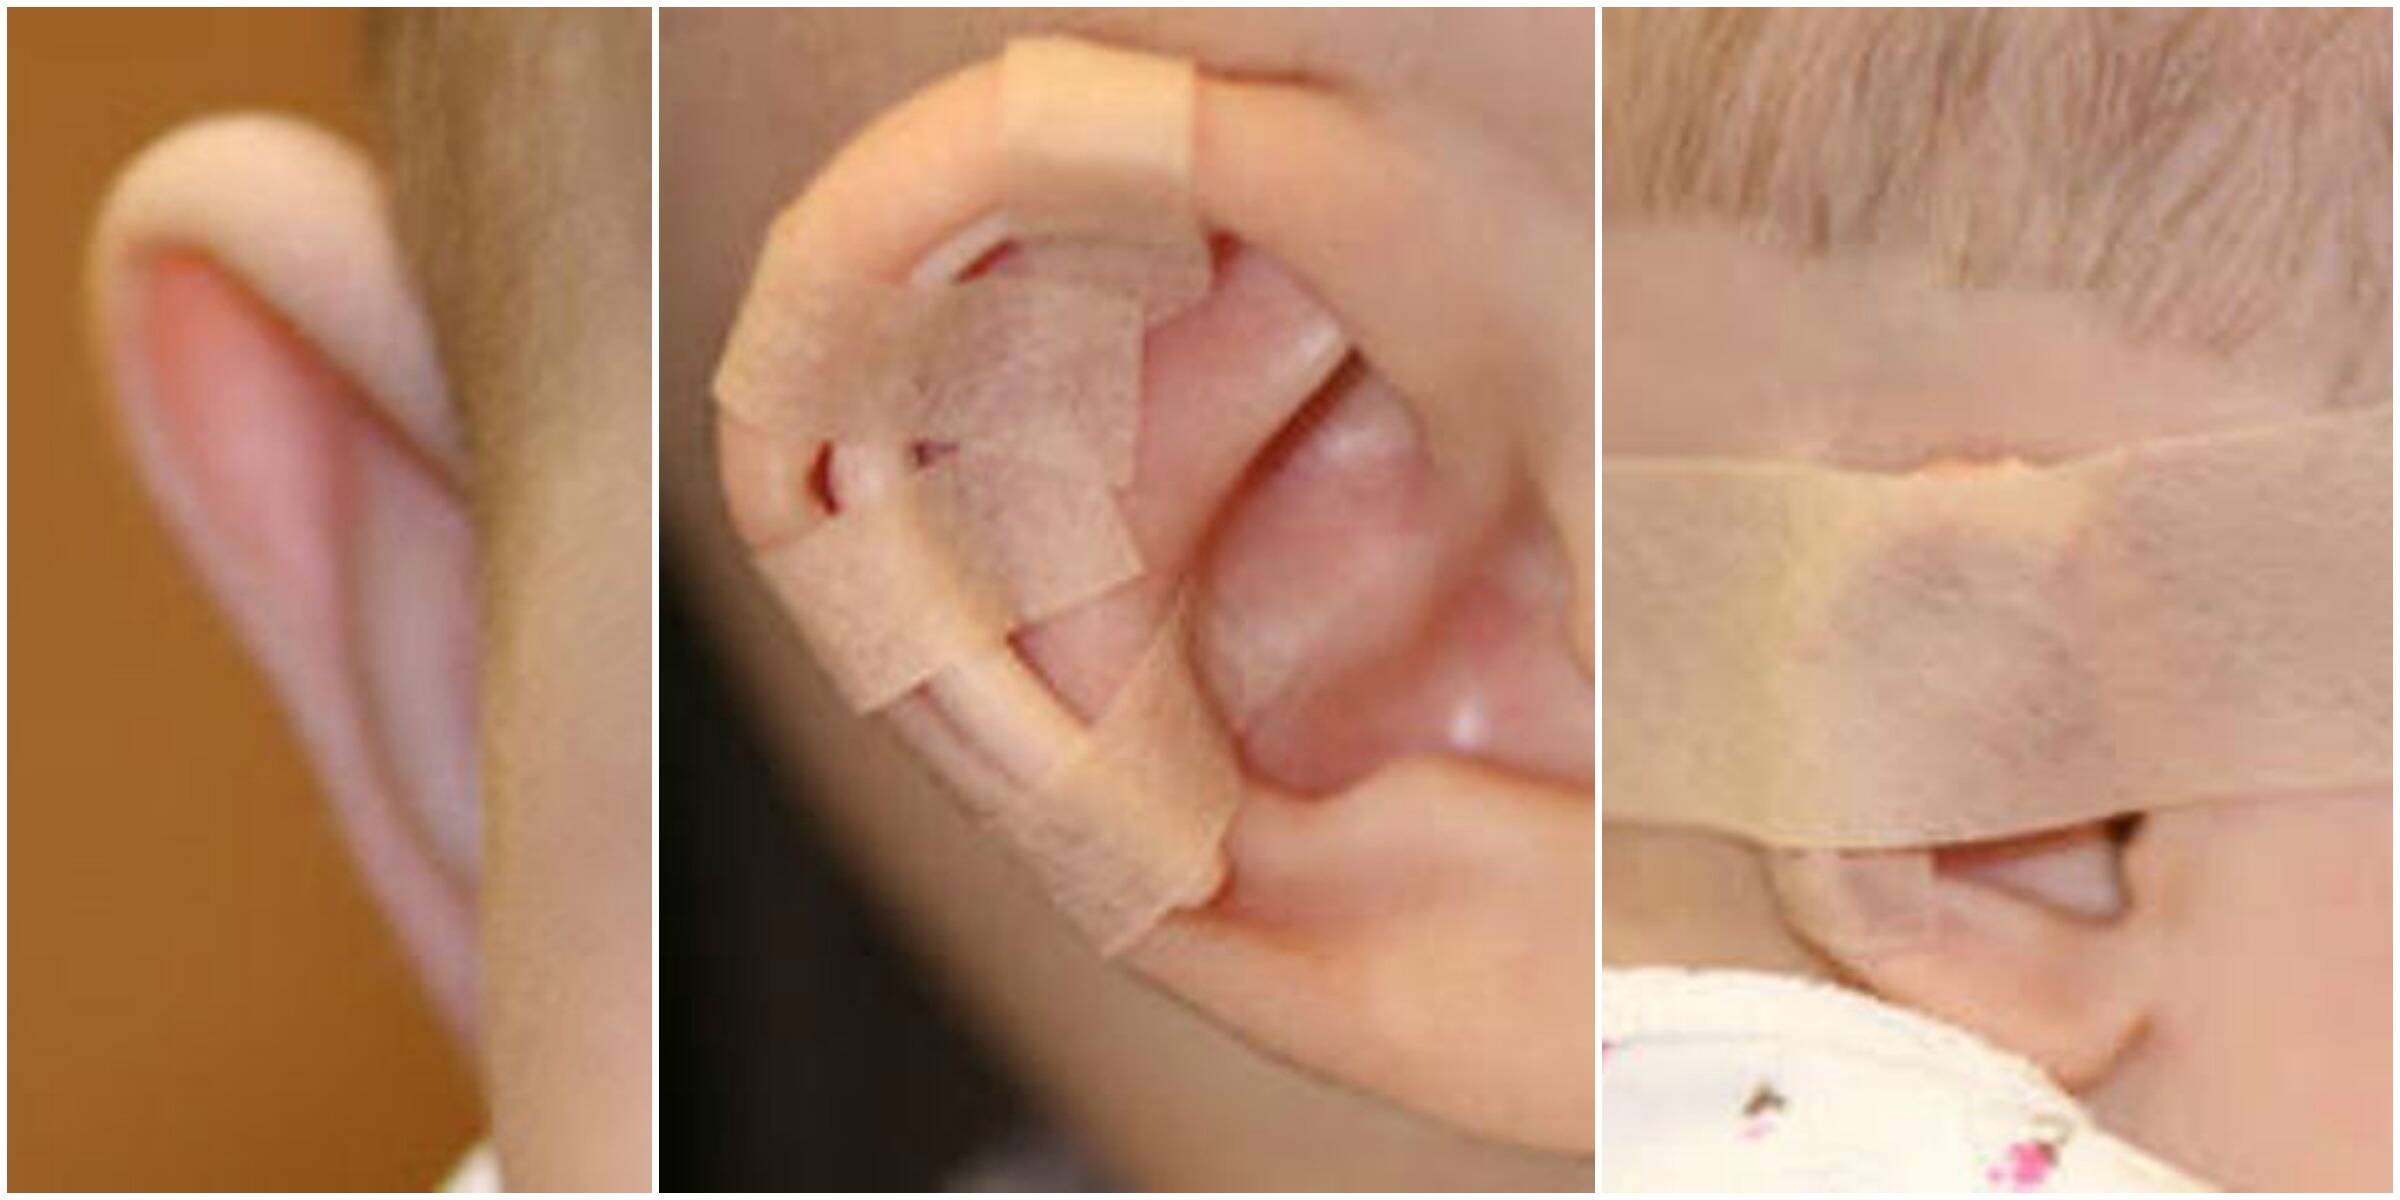 O splint deve ser colocado na orelha do bebê  no máximo 48 horas depois do nascimento / Foto: divulgação